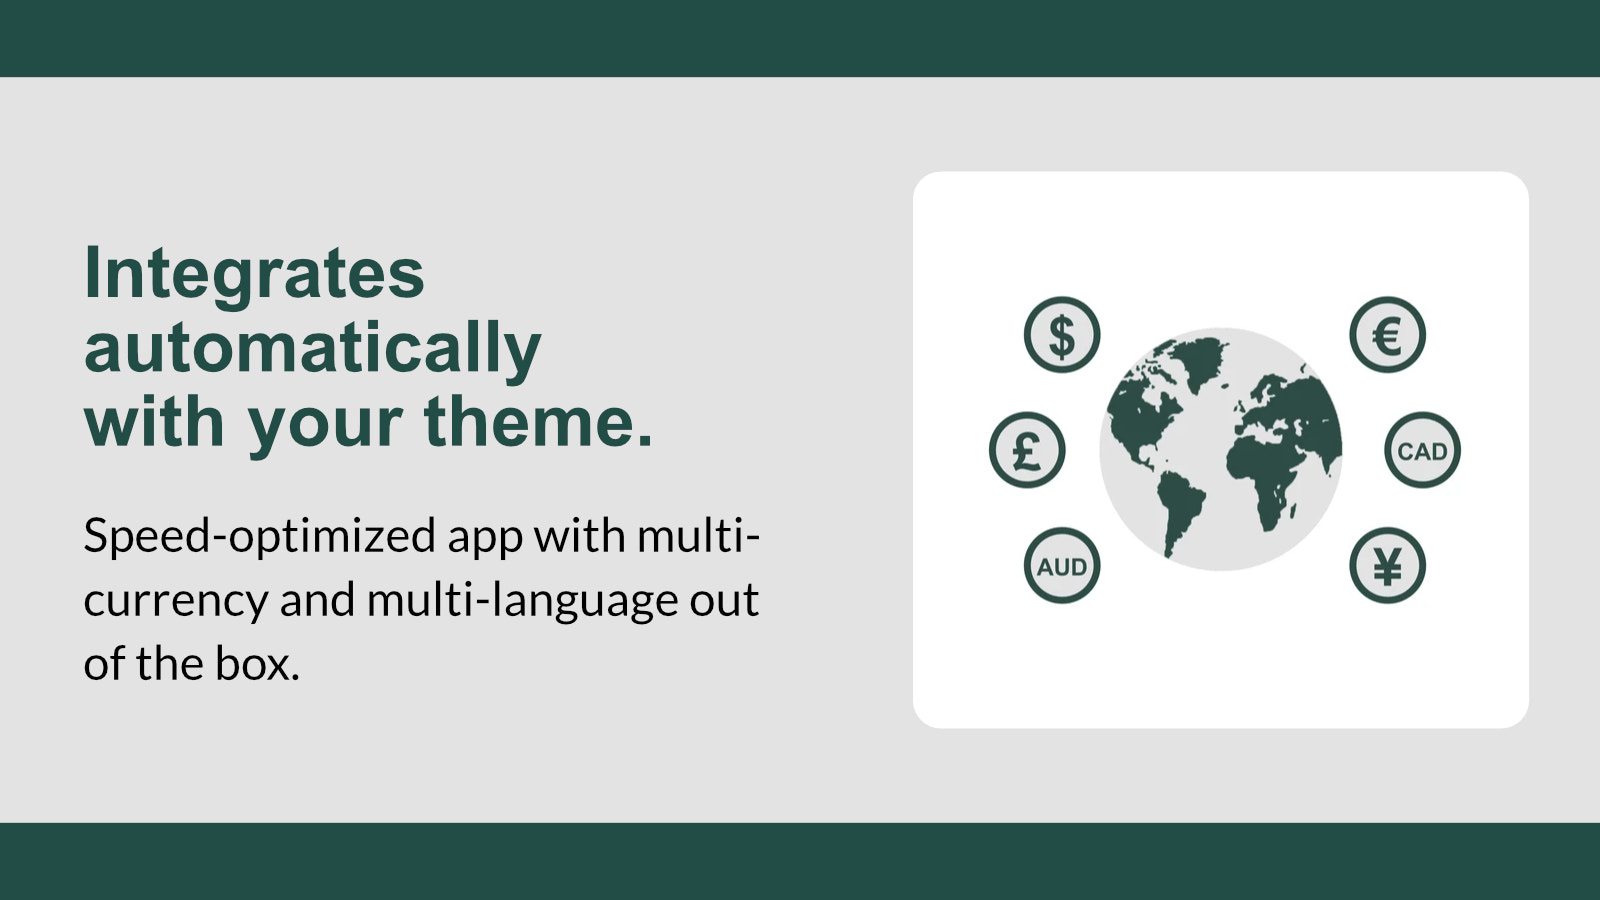 Hastighedsoptimeret app med multi-valuta og multi-sprog.